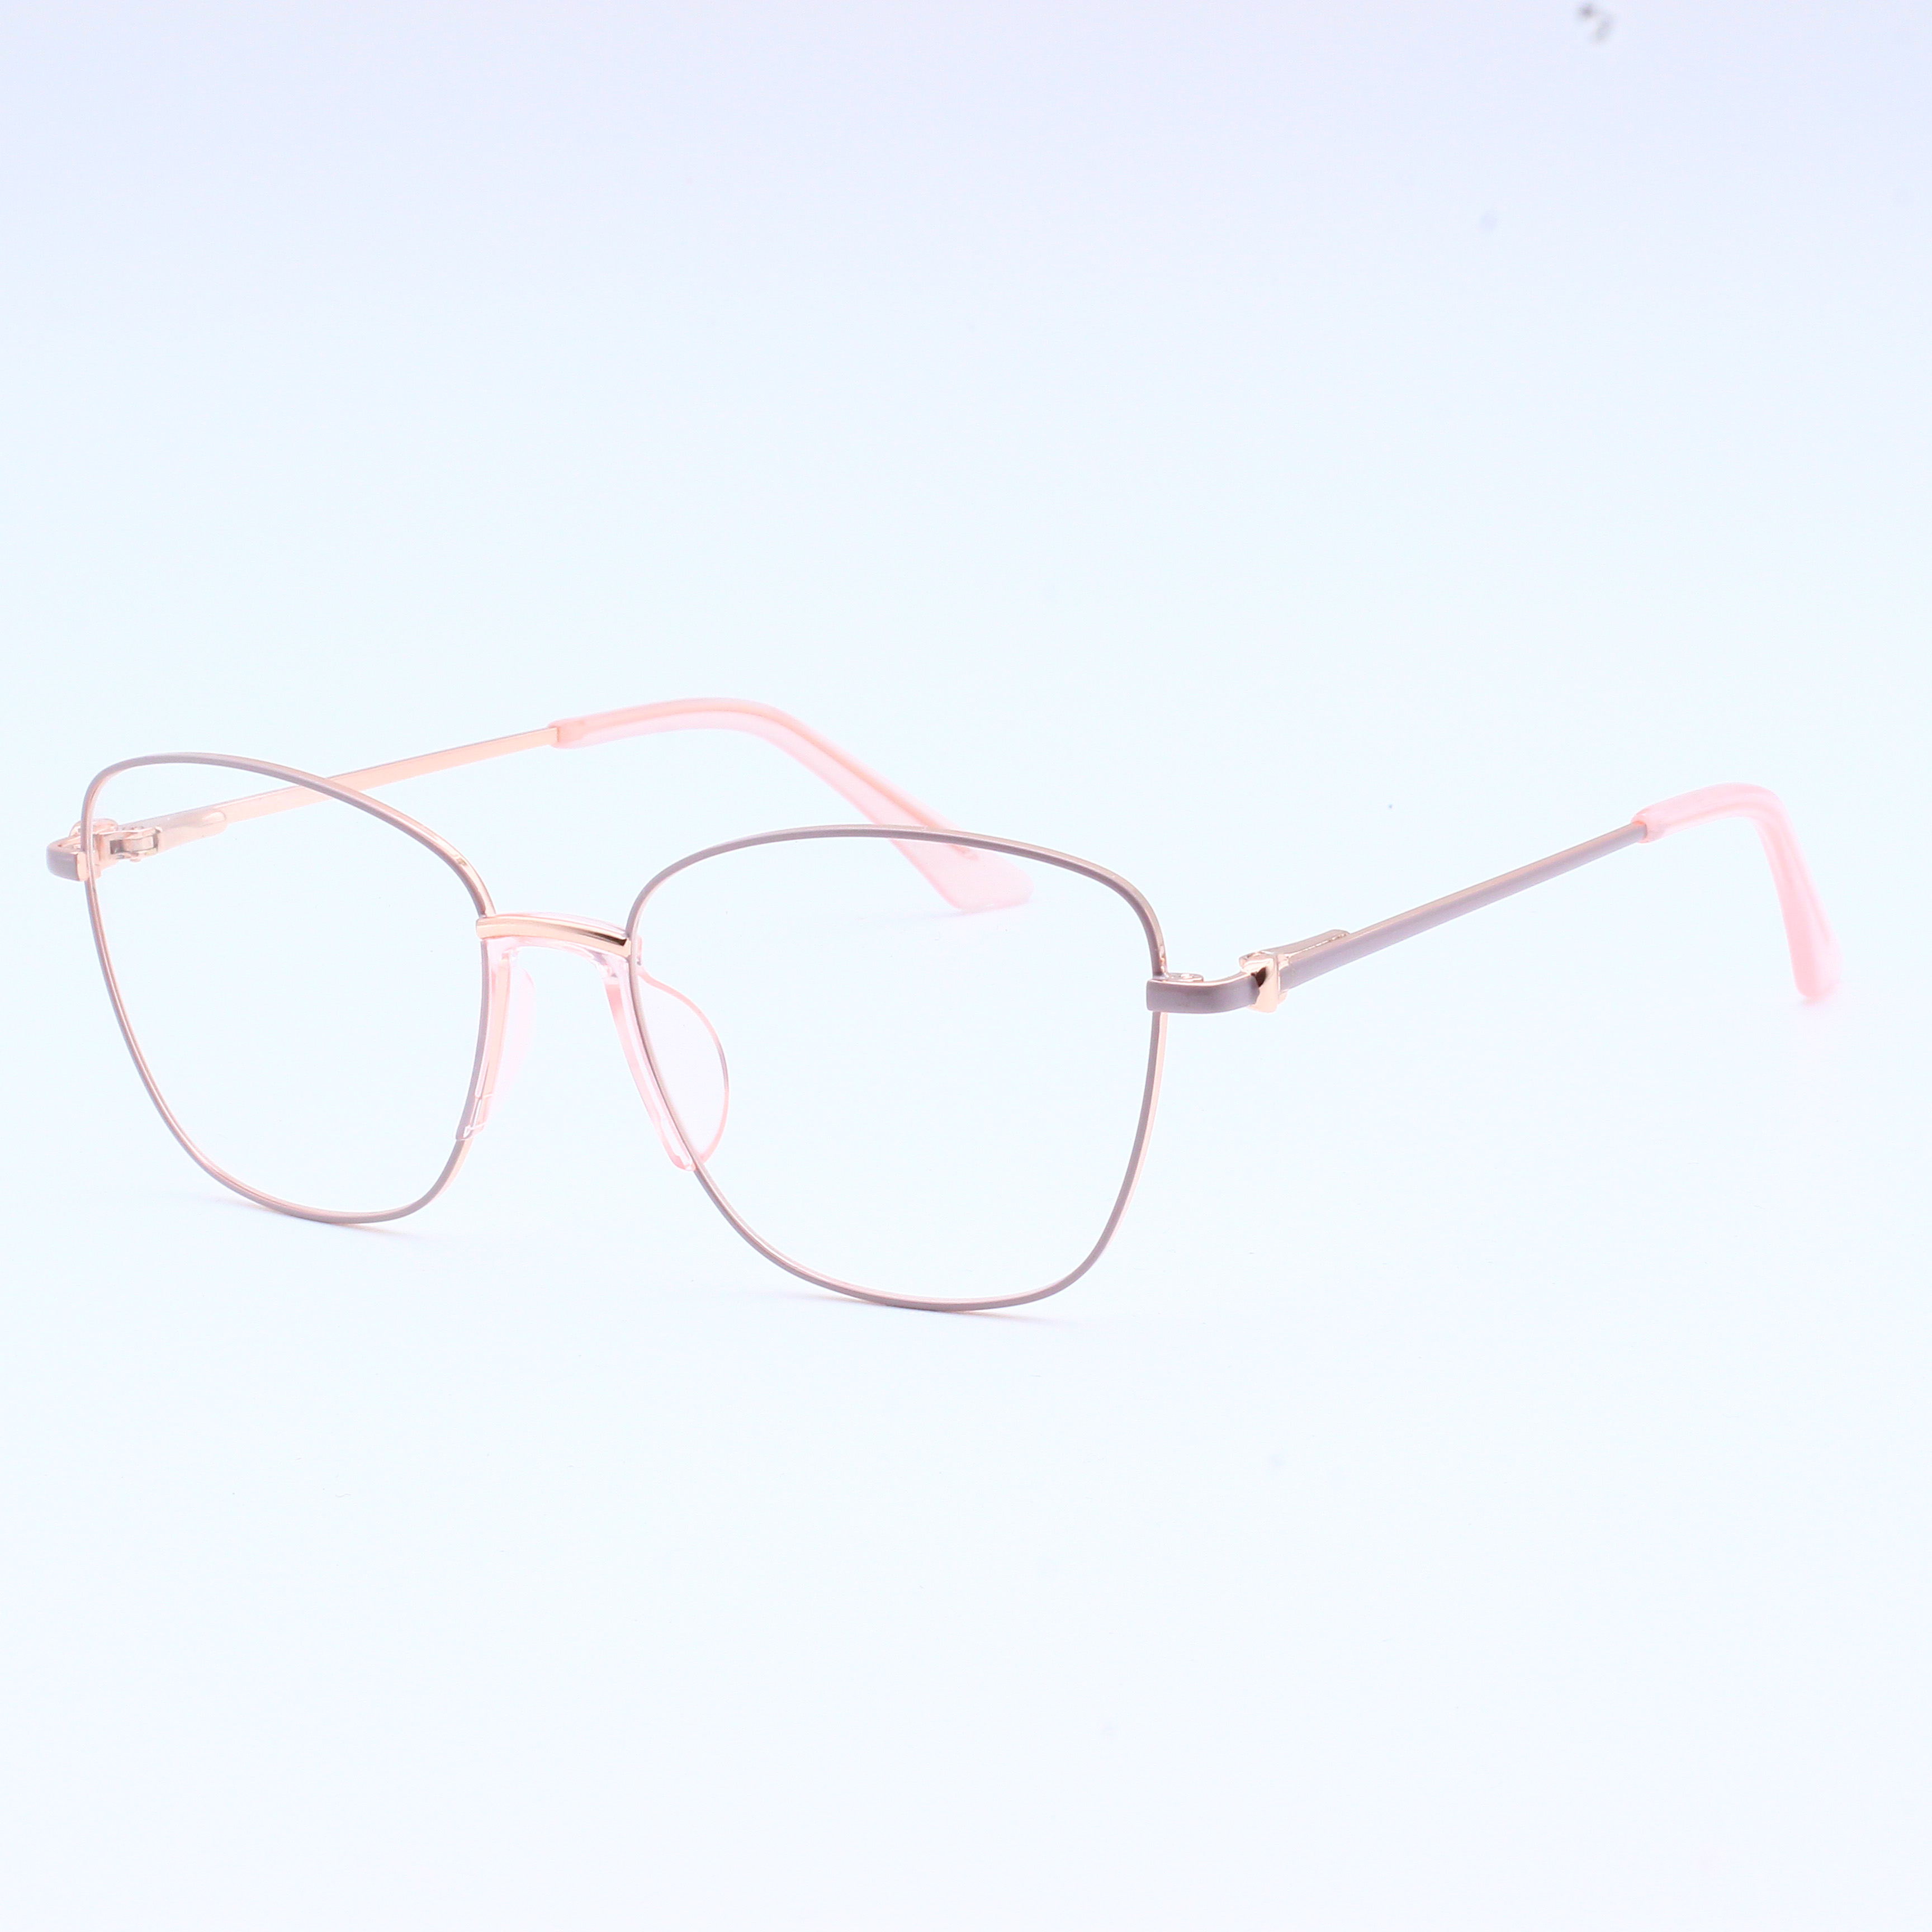 Anti Blue Rays Glasses Spring Leg Eyeglasses Optical Frames (9)